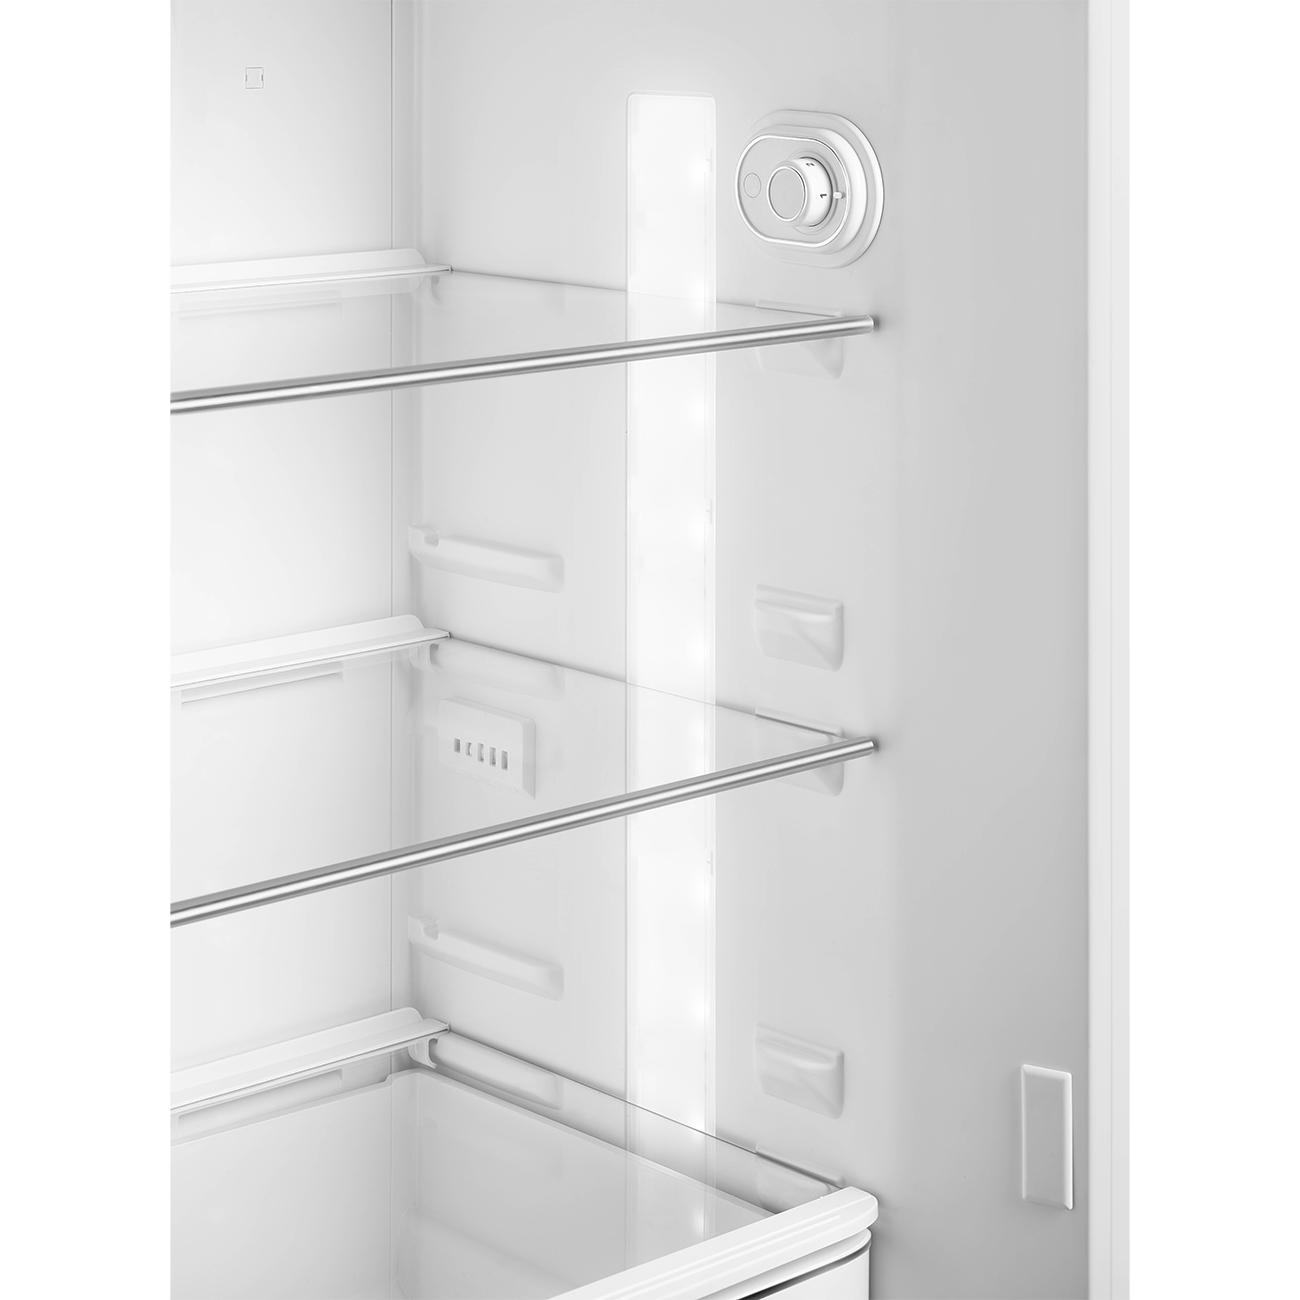 Silver refrigerator - Smeg_5